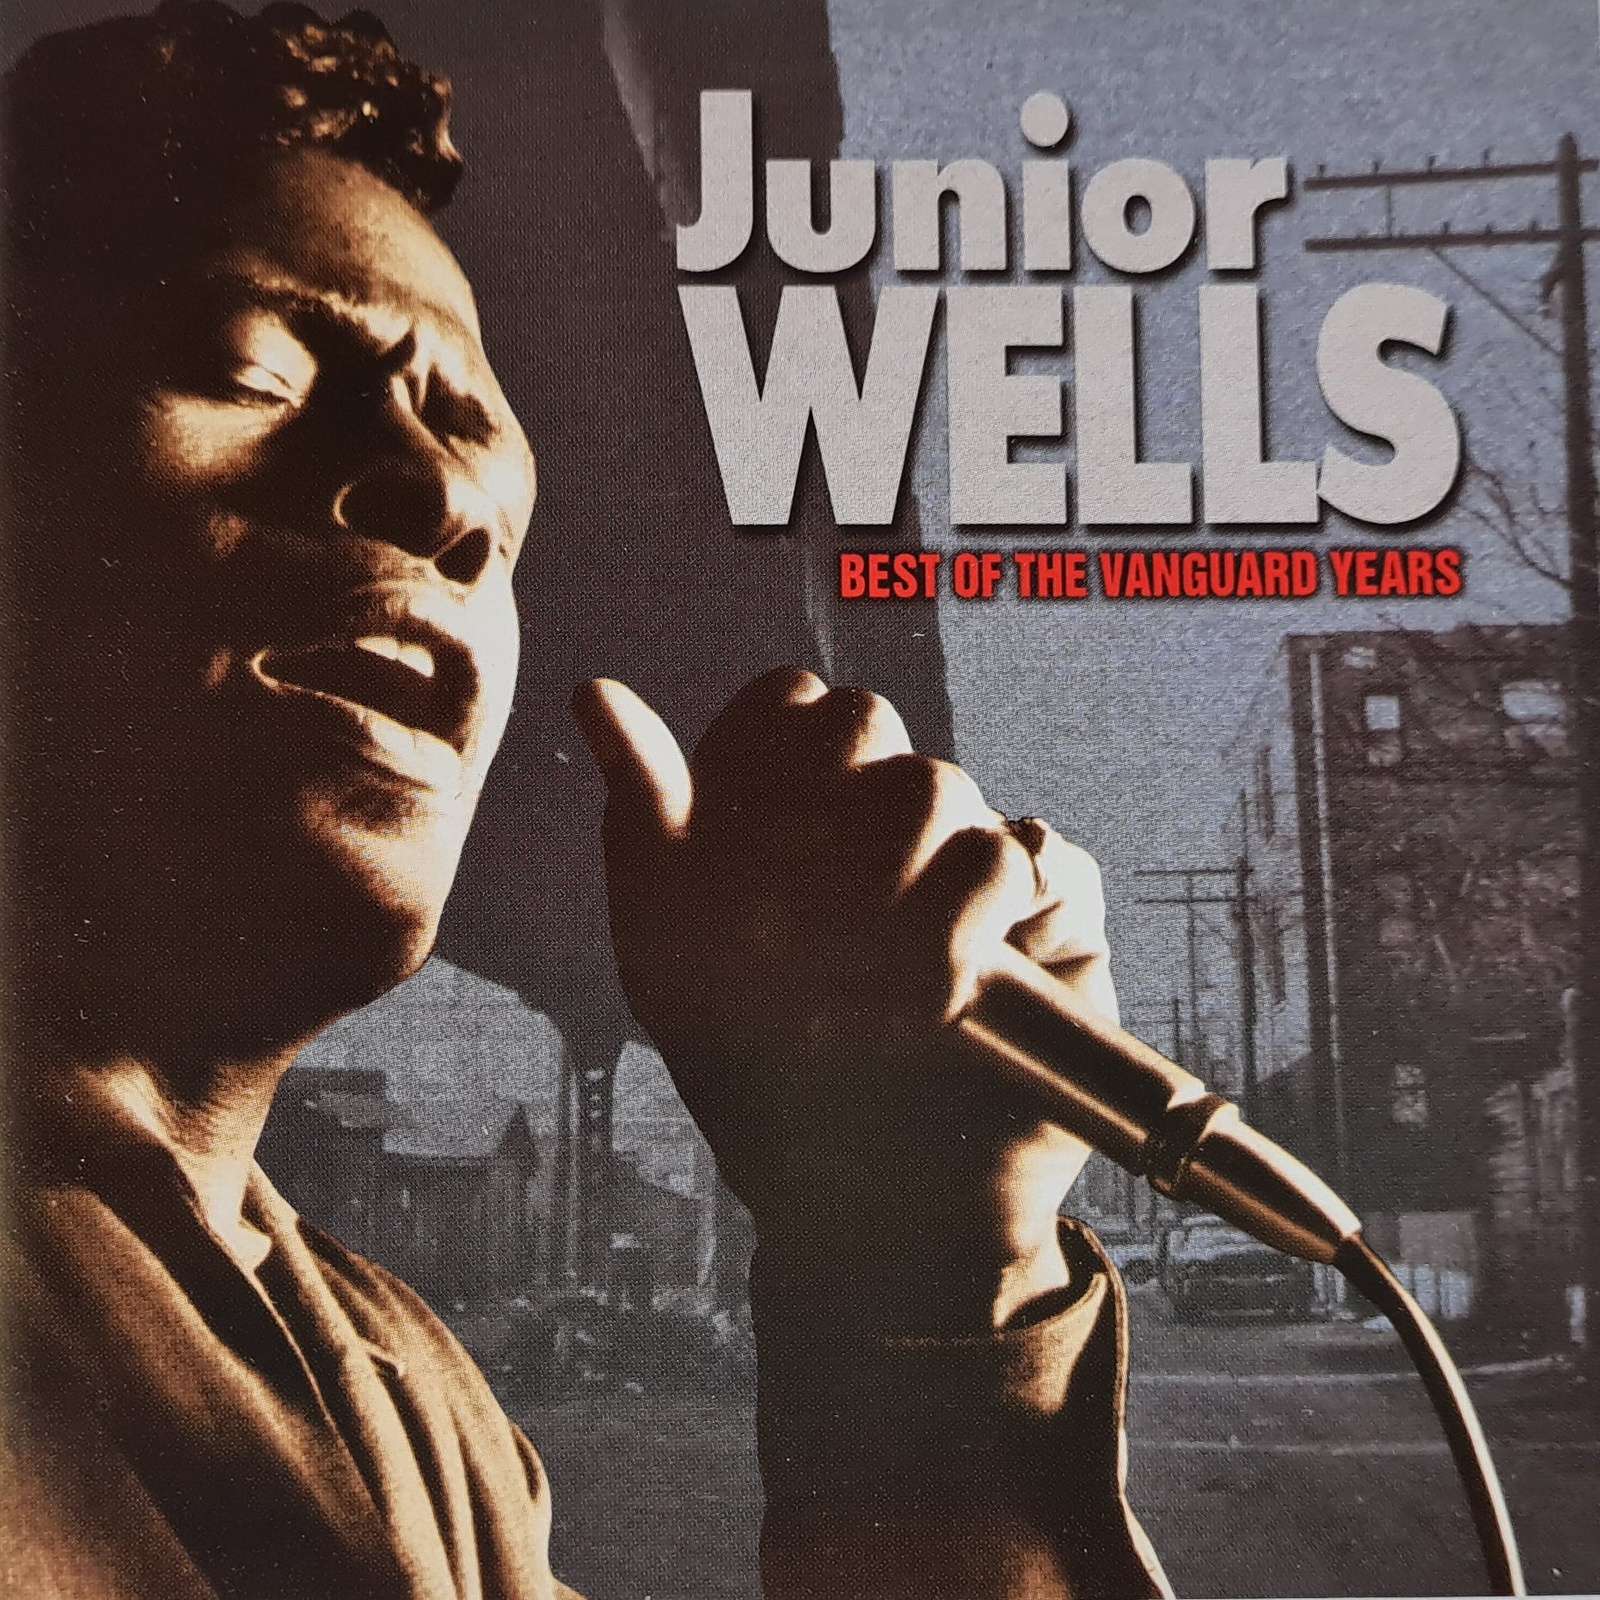 Junior Wells - Best of the Vanguard Years (CD)